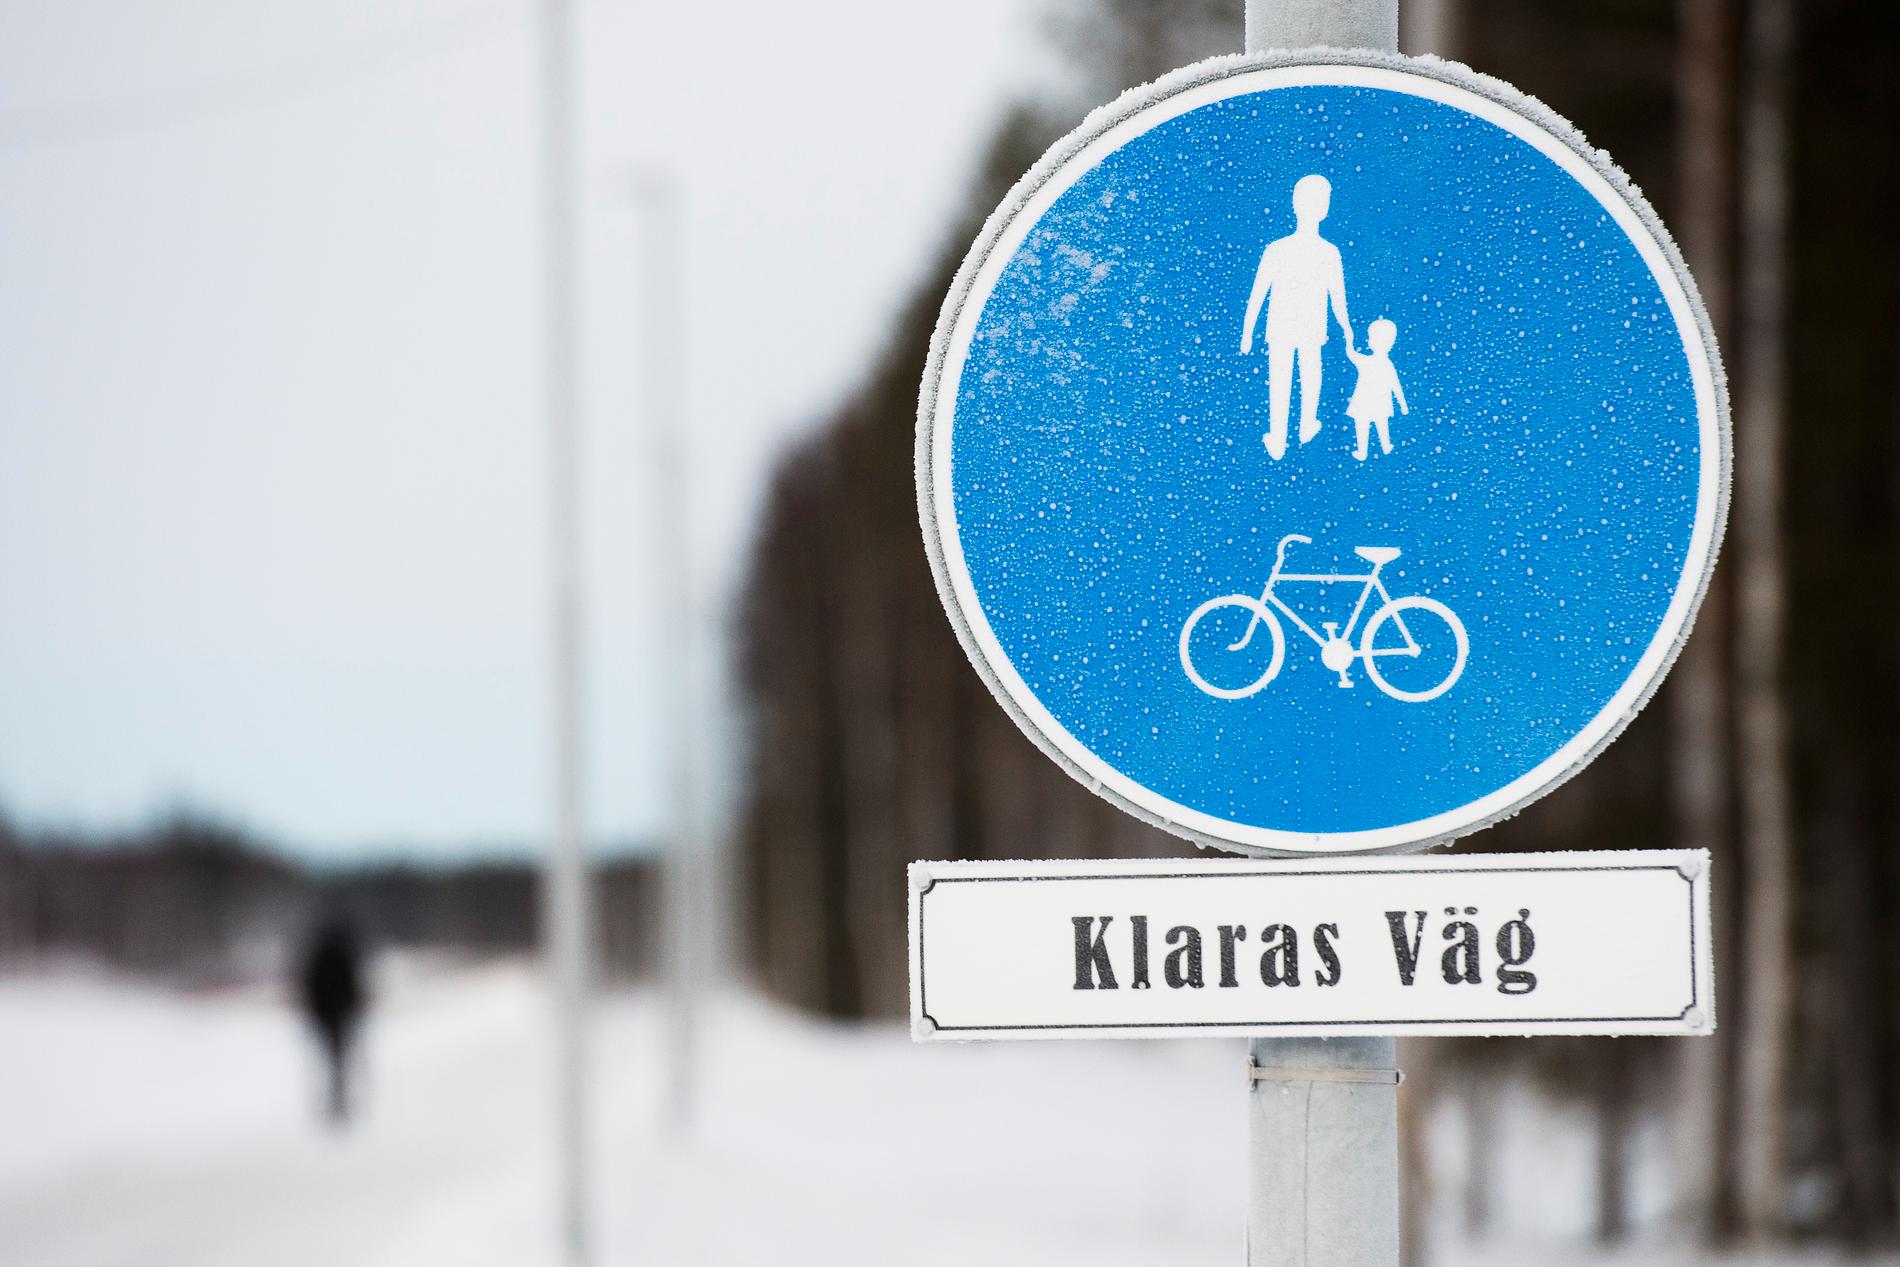 Klaras sista stora projekt var att driva igenom ett bygge av en cykel- och gångväg mellan Nyborg och Kalix. Hon hann aldrig se vägen färdigställd men den är nu uppkallad efter henne.